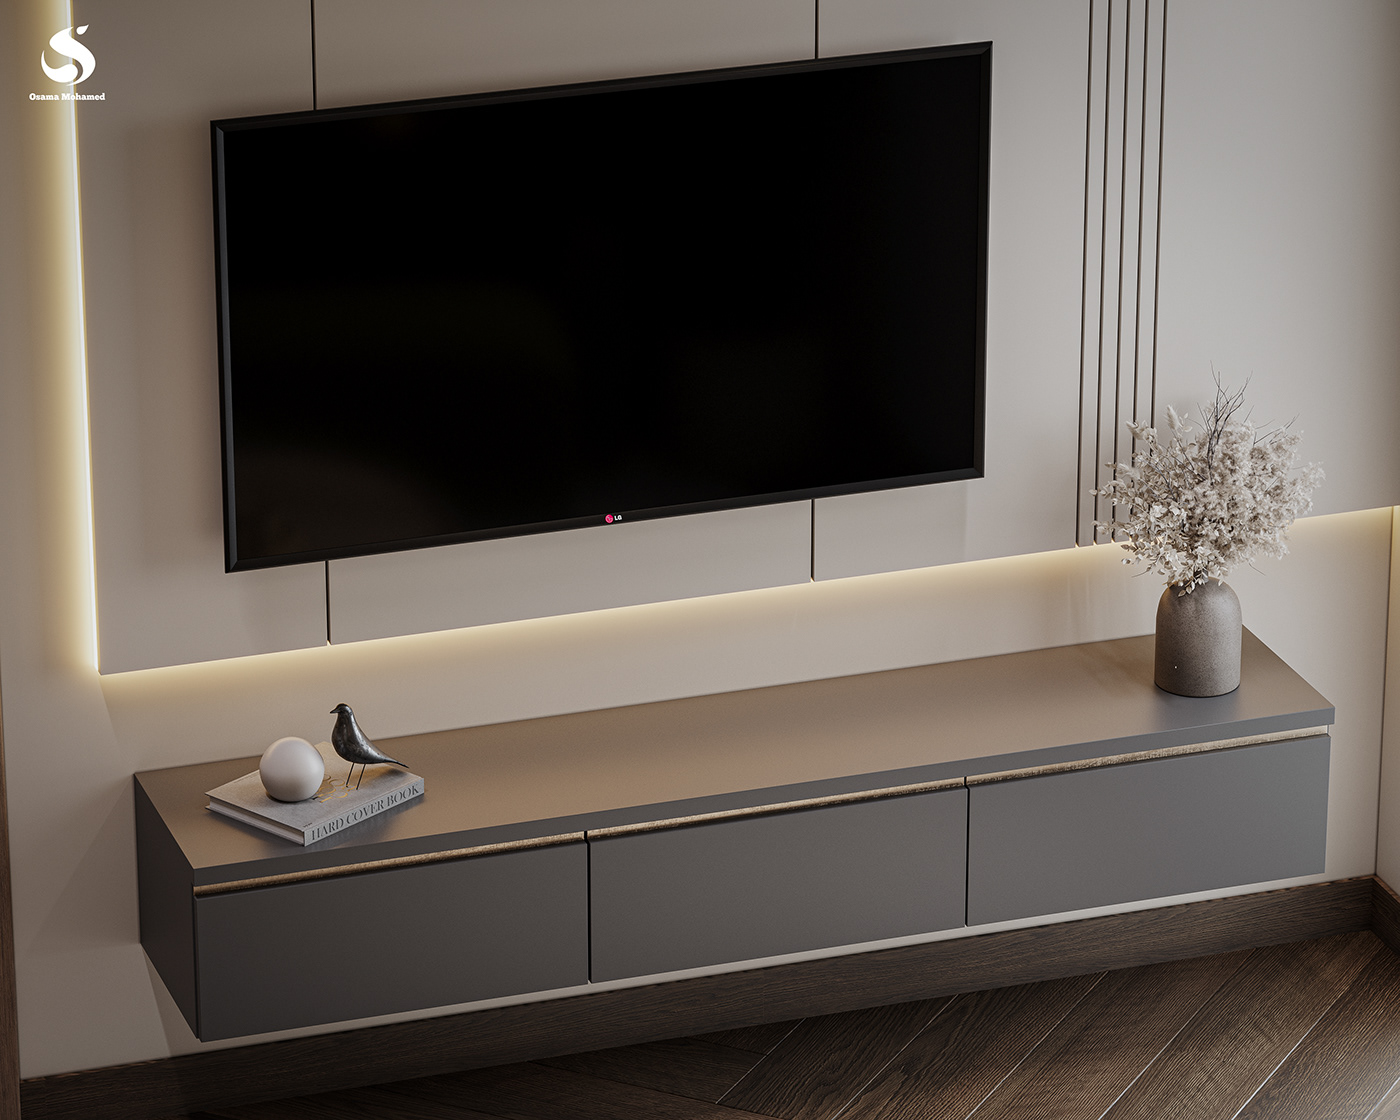 coffee table furniture interior design  architecture Render modern corona visualization 3ds max